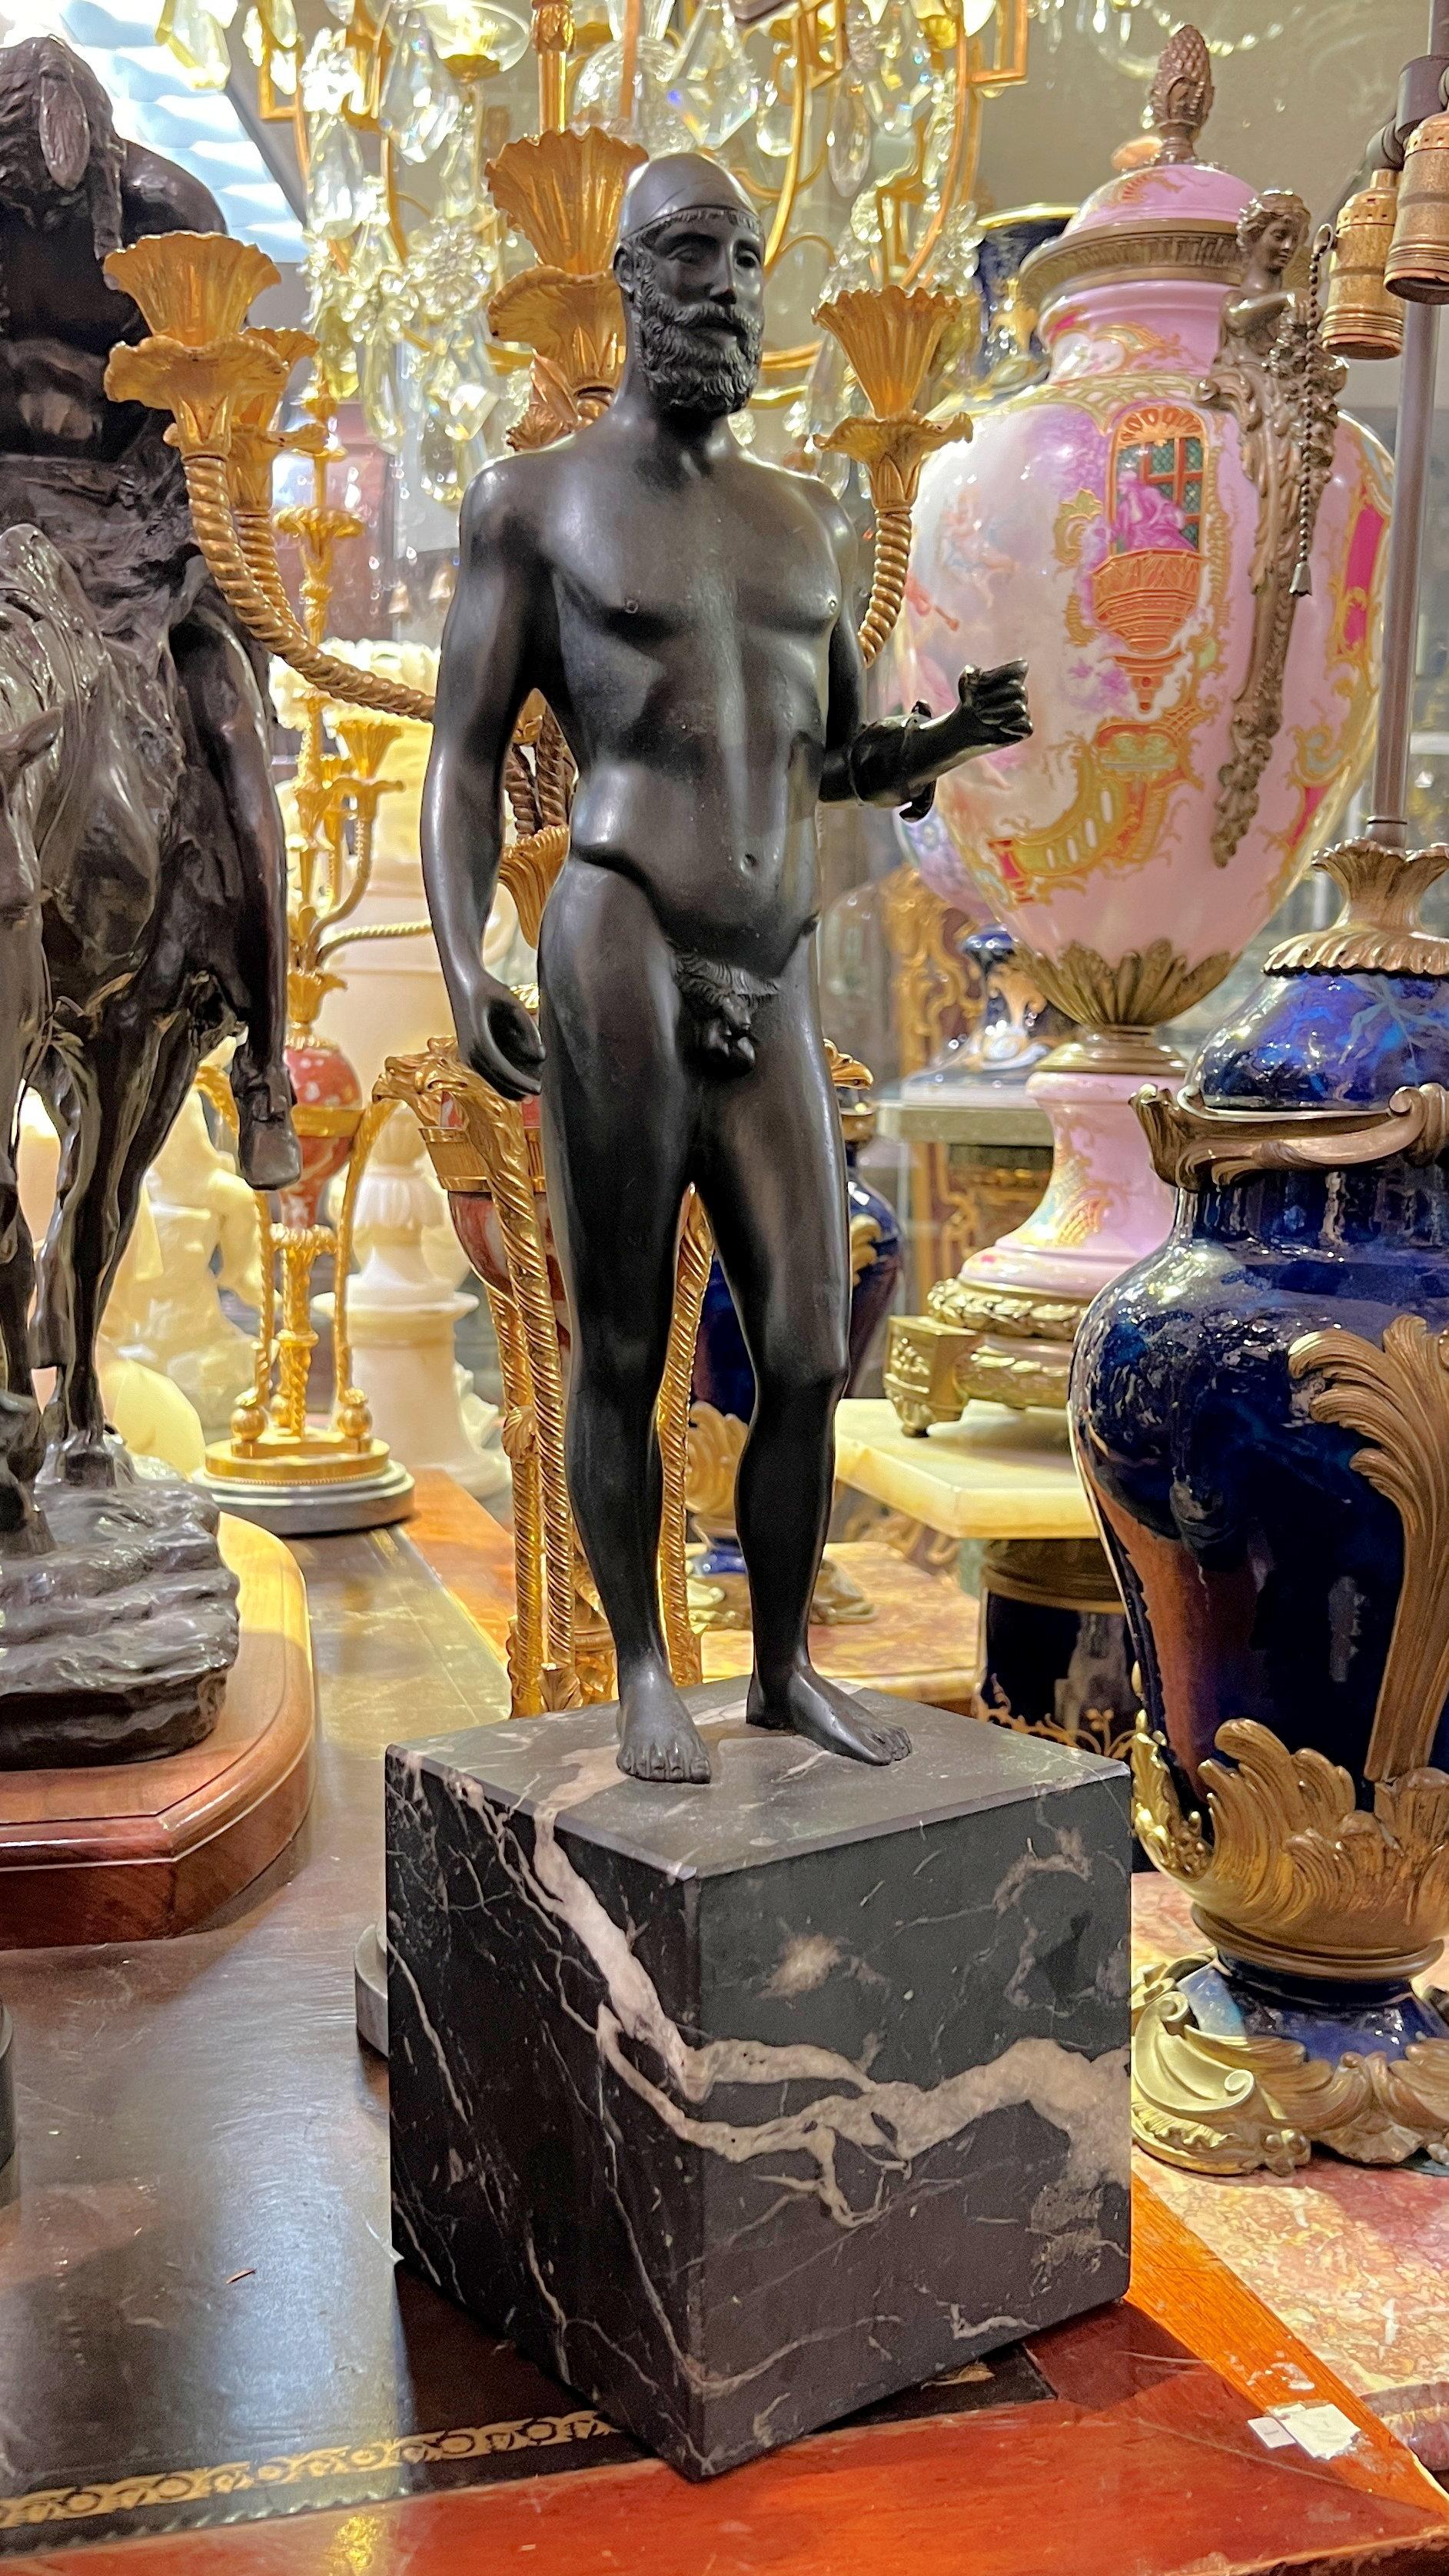 Vintage (Mitte des Jahrhunderts) Grand-Tour-Bronzefigur eines Riace-Kriegers aus Italien mit dunkelbrauner Patina, montiert auf Marmorsockel.  21,25 Zoll Gesamthöhe.

Die originalen lebensgroßen so genannten Riace-Krieger sind zwei lebensgroße